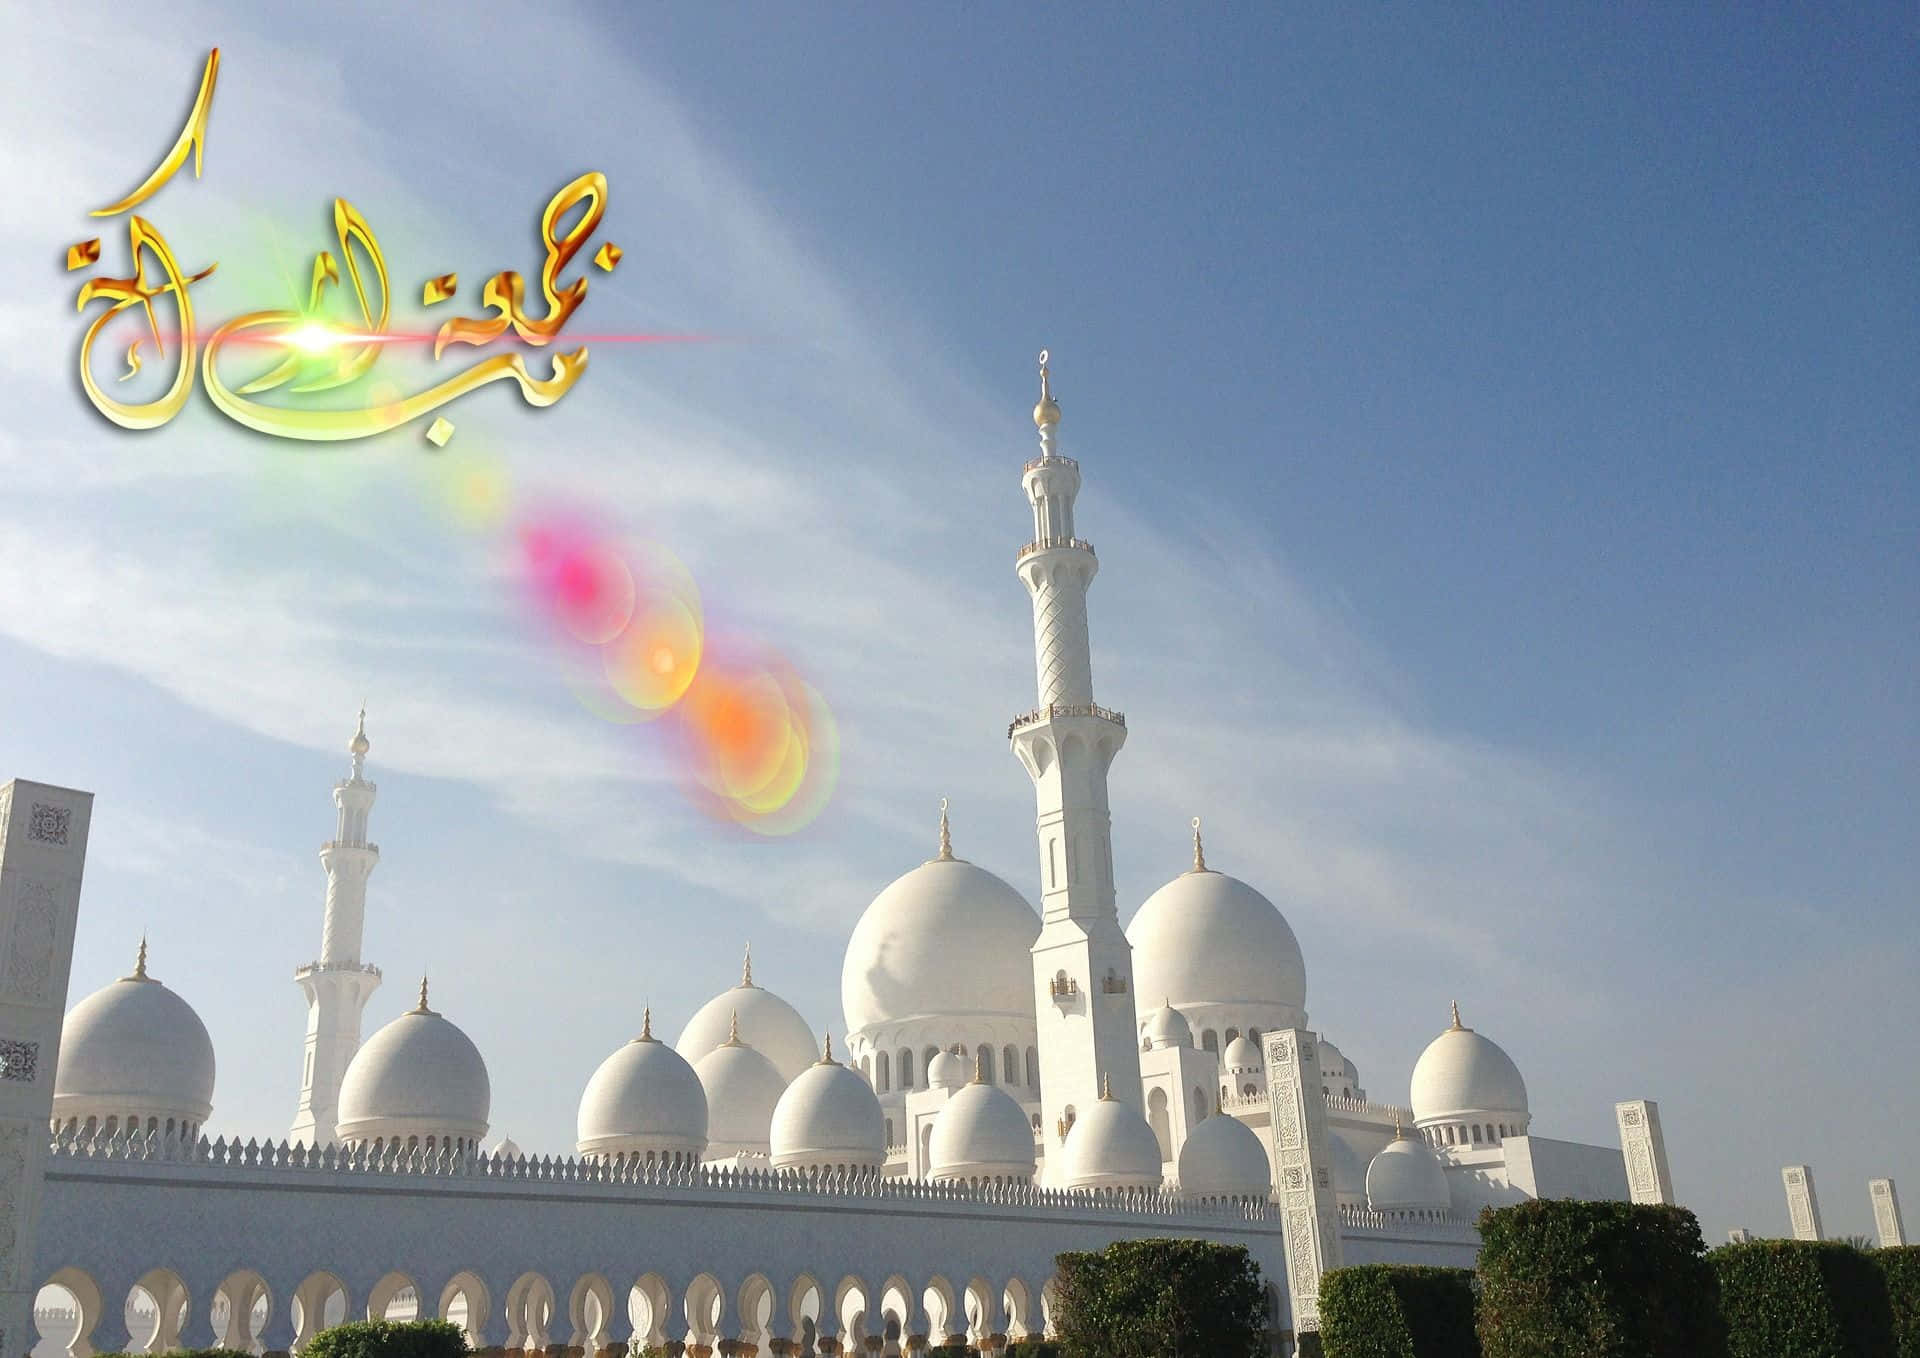 Måallah Velsigne Os Alle Med Fred, Glæde Og Velstand På Jumma Mubarak-dagen.